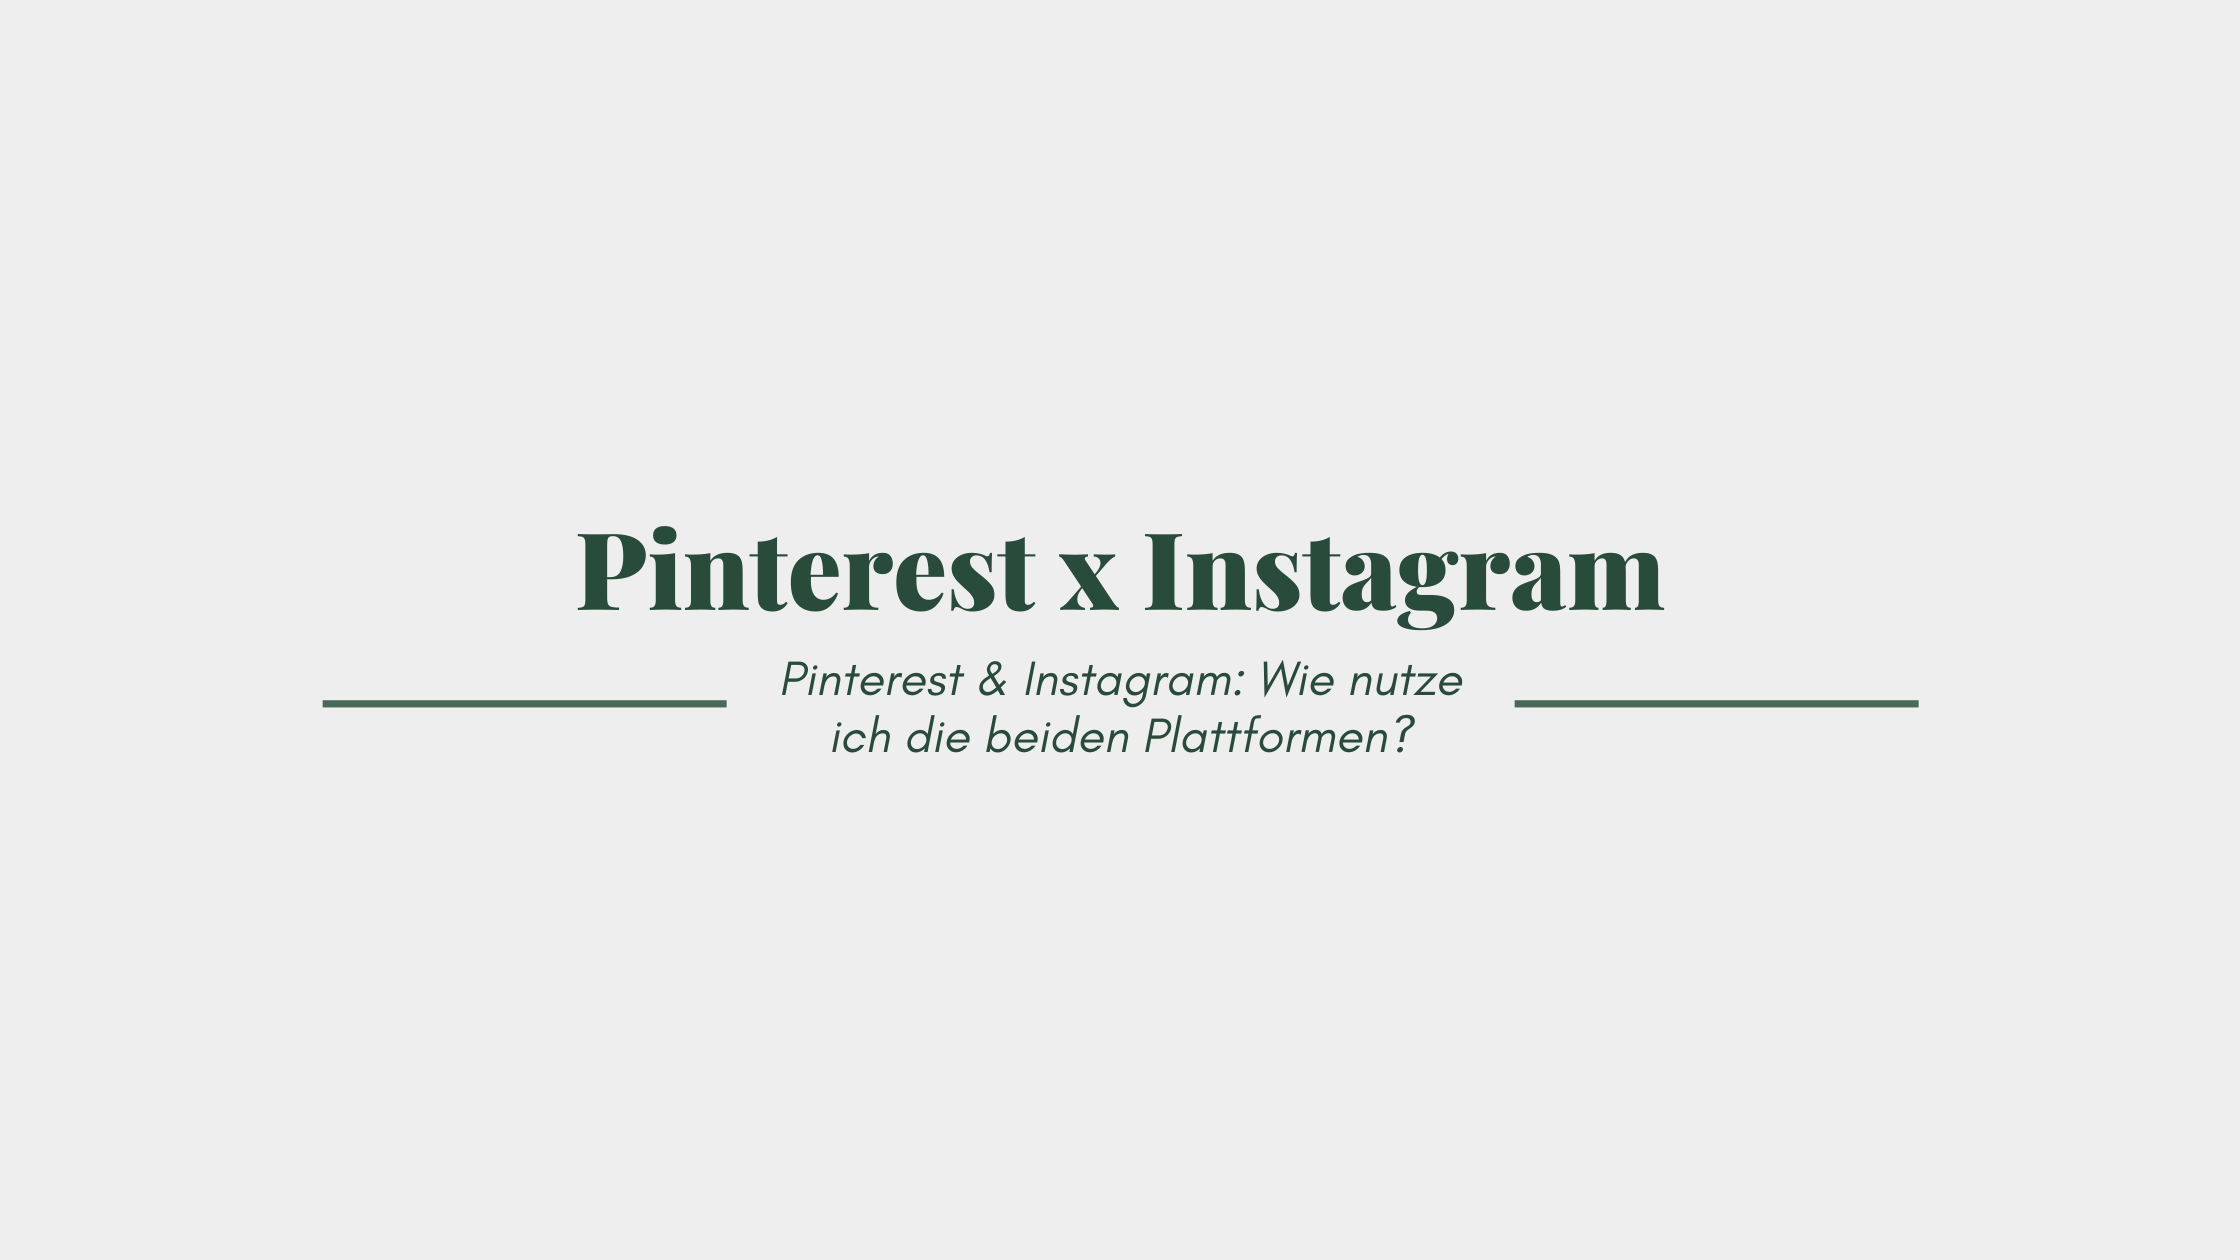 Pinterest & Instagram